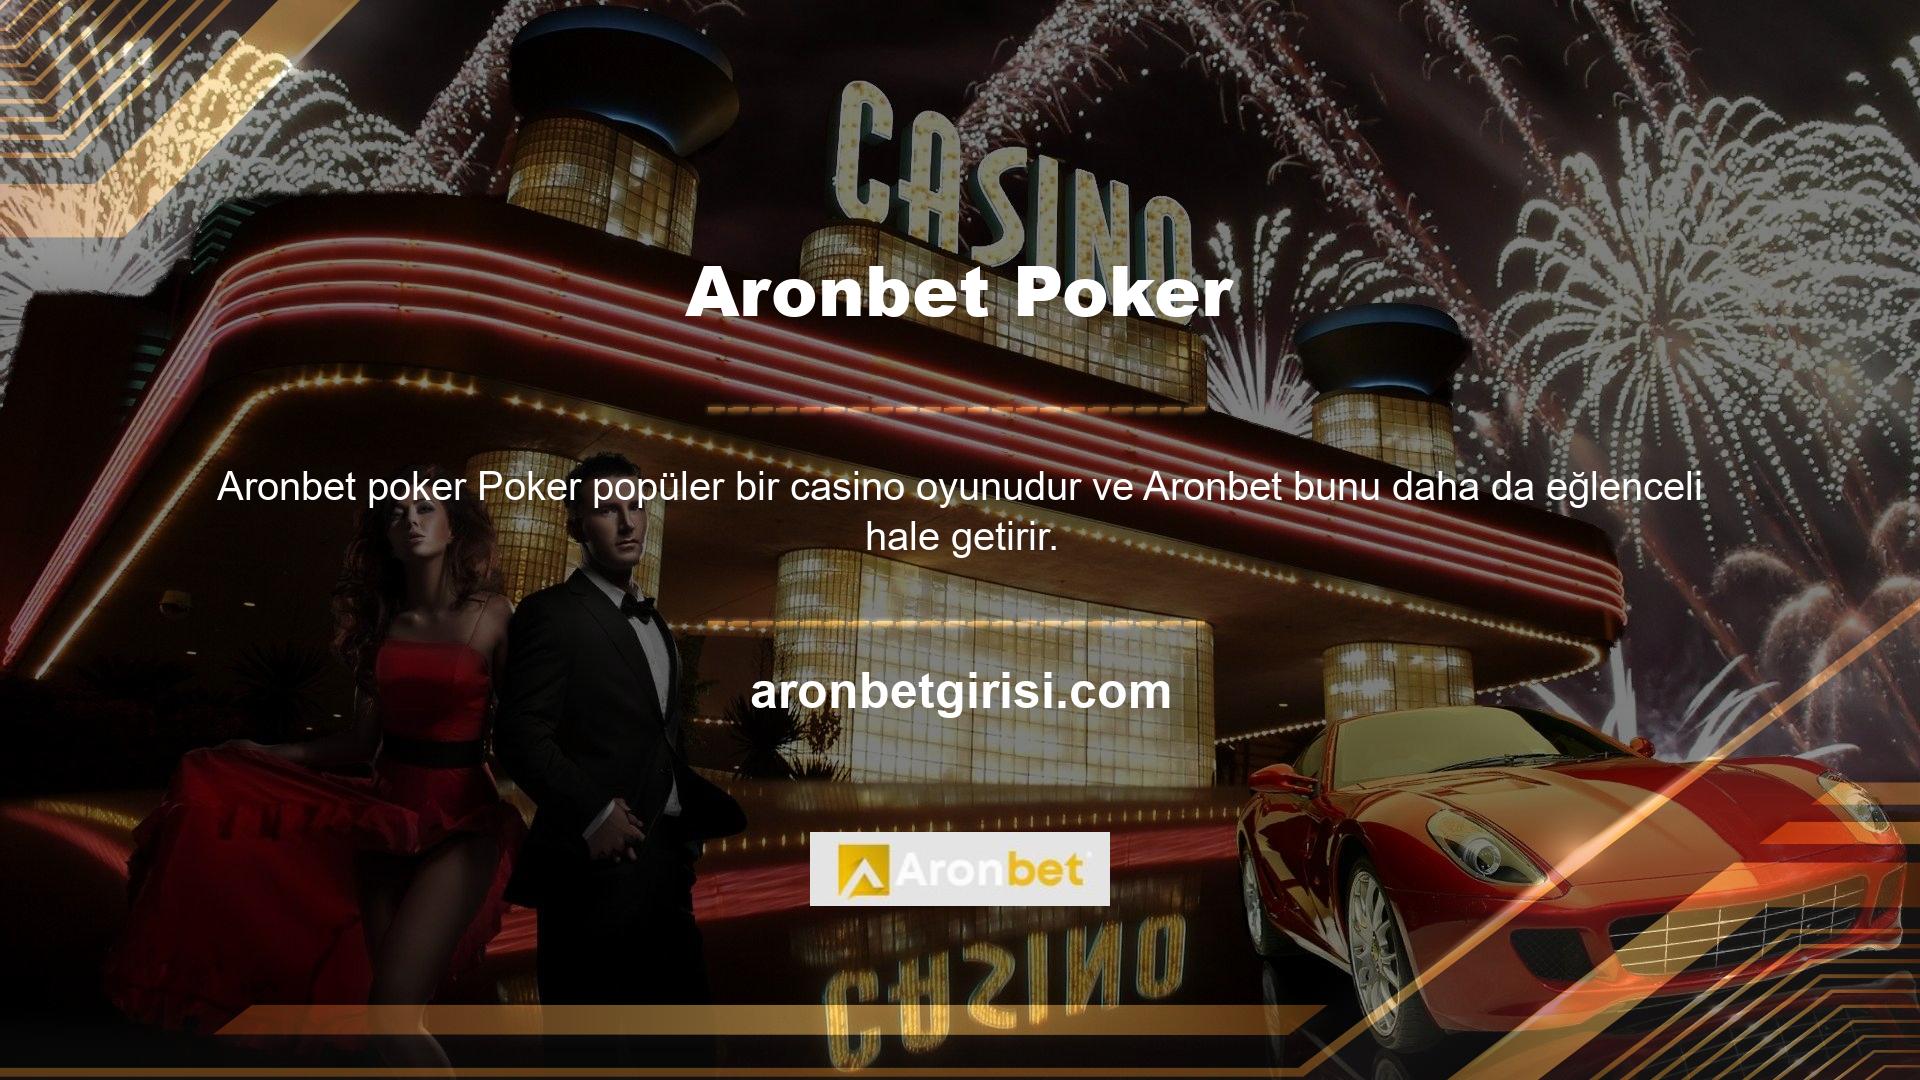 Site, poker oyunlarının farklı versiyonlarına sahiptir